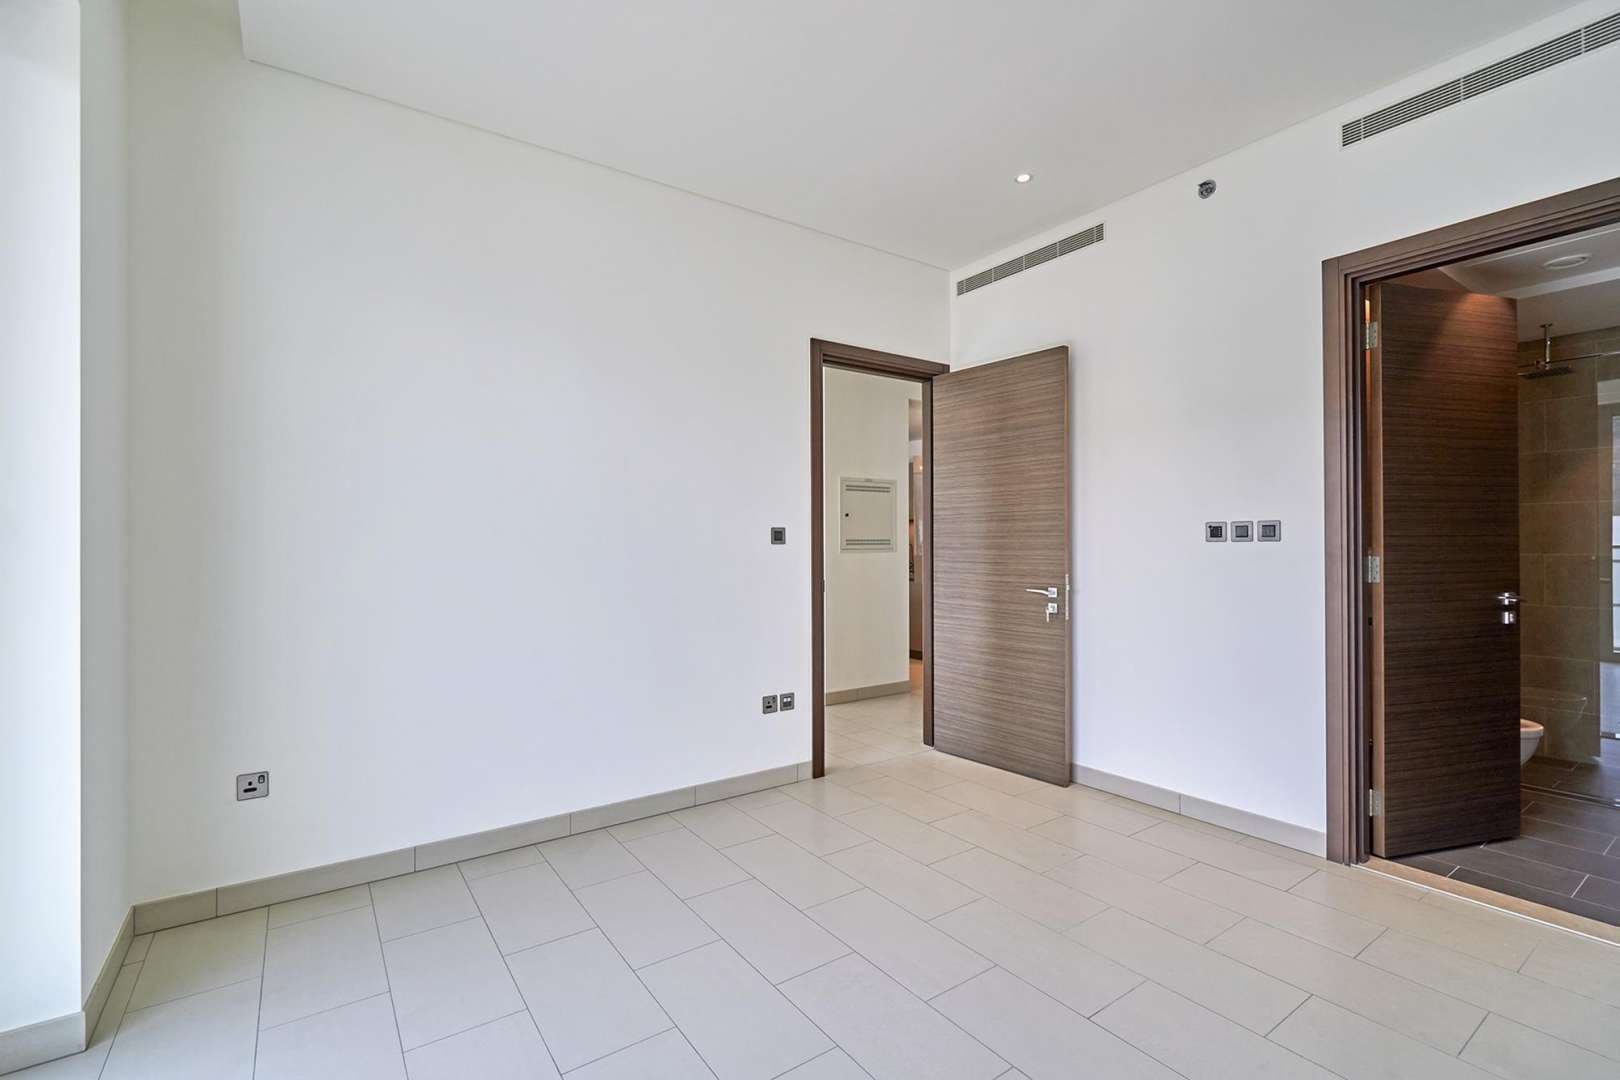 1 Bedroom Apartment For Rent Sobha Hartland Greens Lp06029 10c94d8c3d950e00.jpg